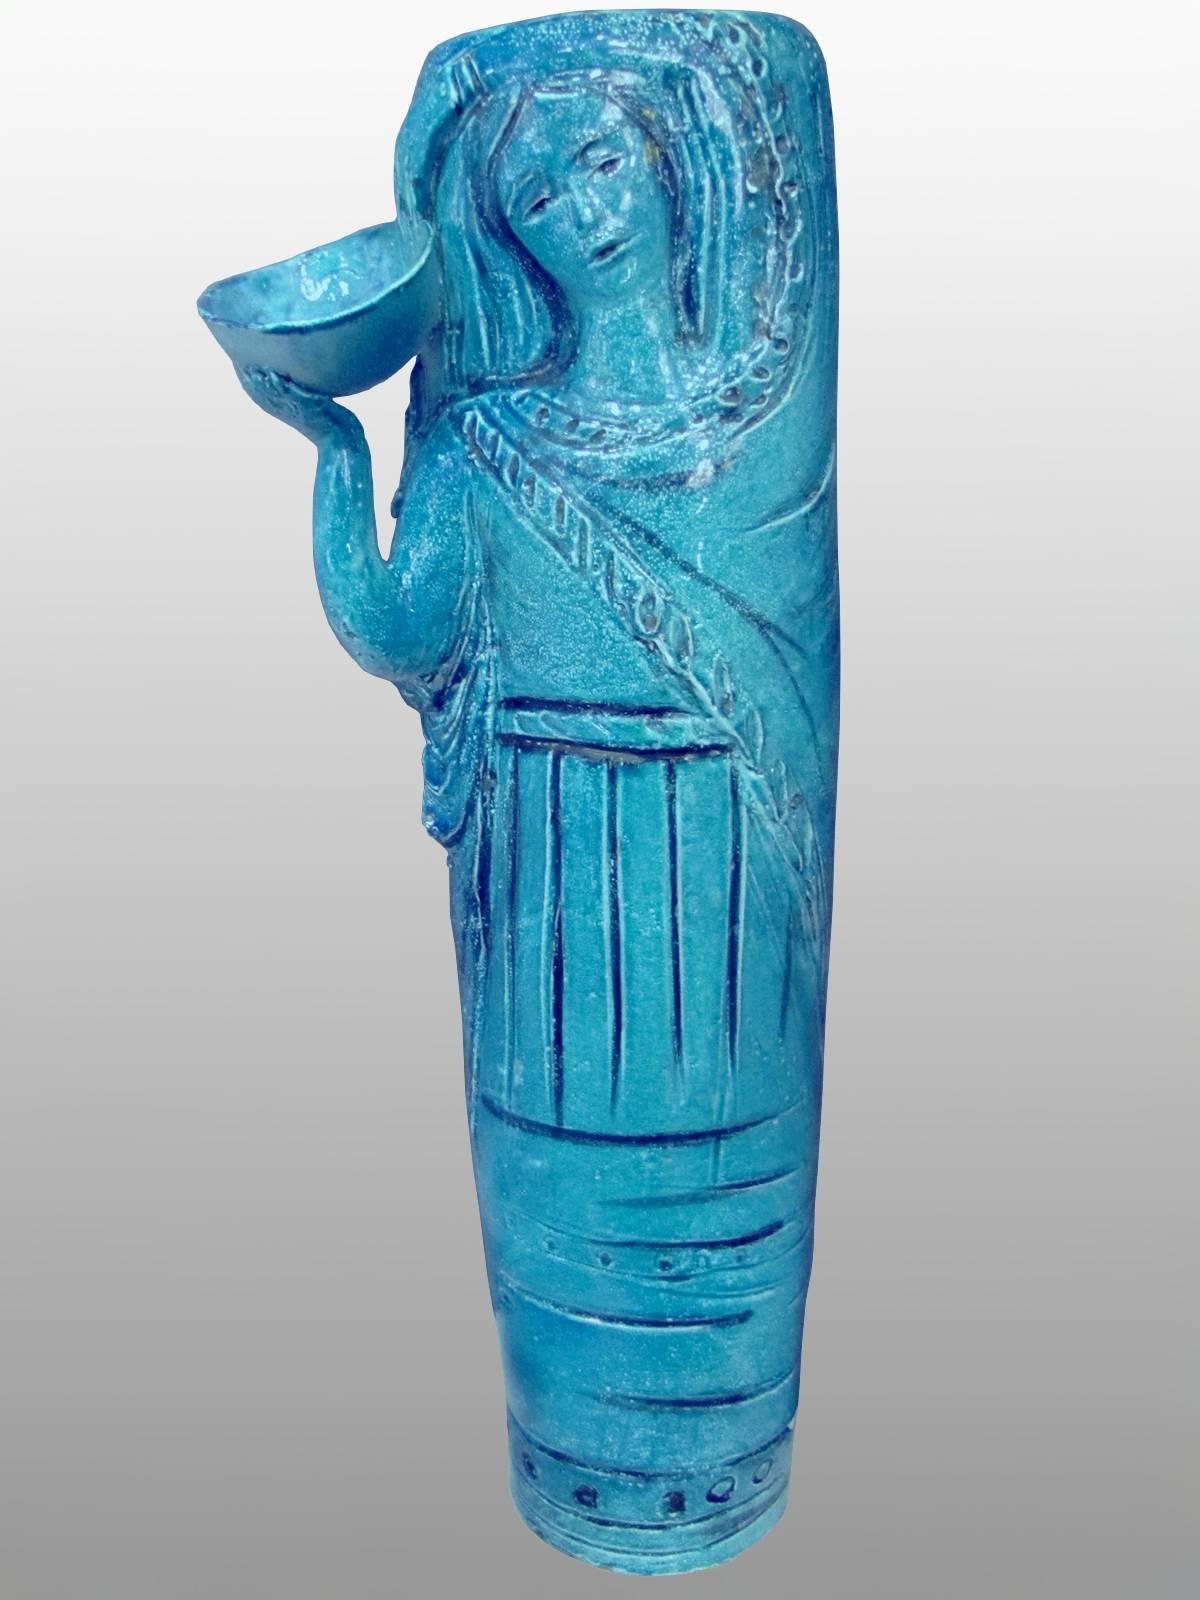 Grand vase-sculpture en faïence émaillée bleue d'Angelo Ungania (1905-1996). Pièce unique. Signé.

Angelo Ungania a étudié à l'École royale de céramique de sa ville.
Au début des années 20, il travaille comme décorateur à la manufacture 